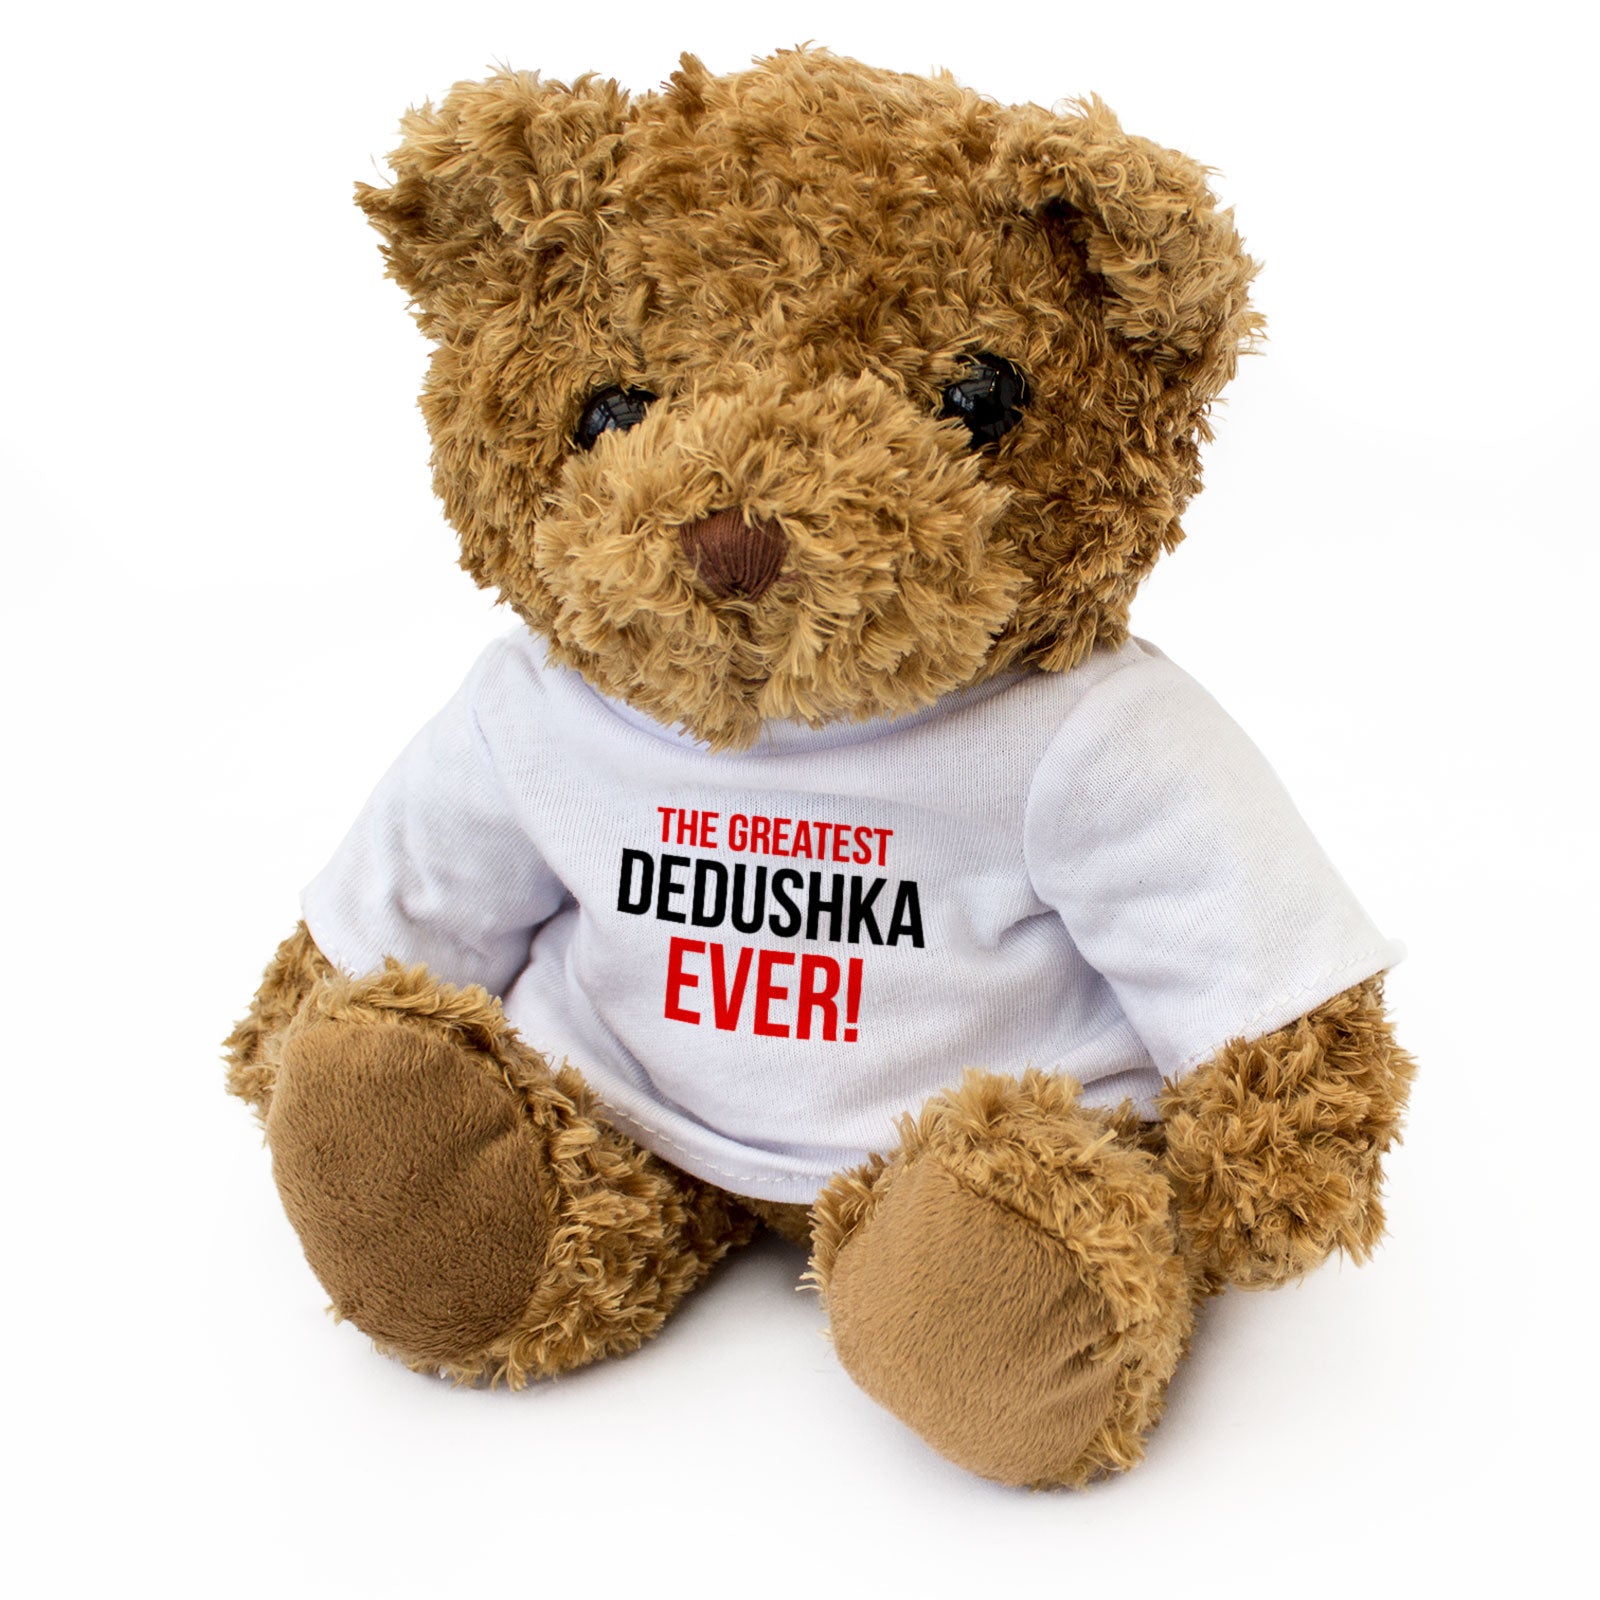 The Greatest Dedushka Ever - Teddy Bear